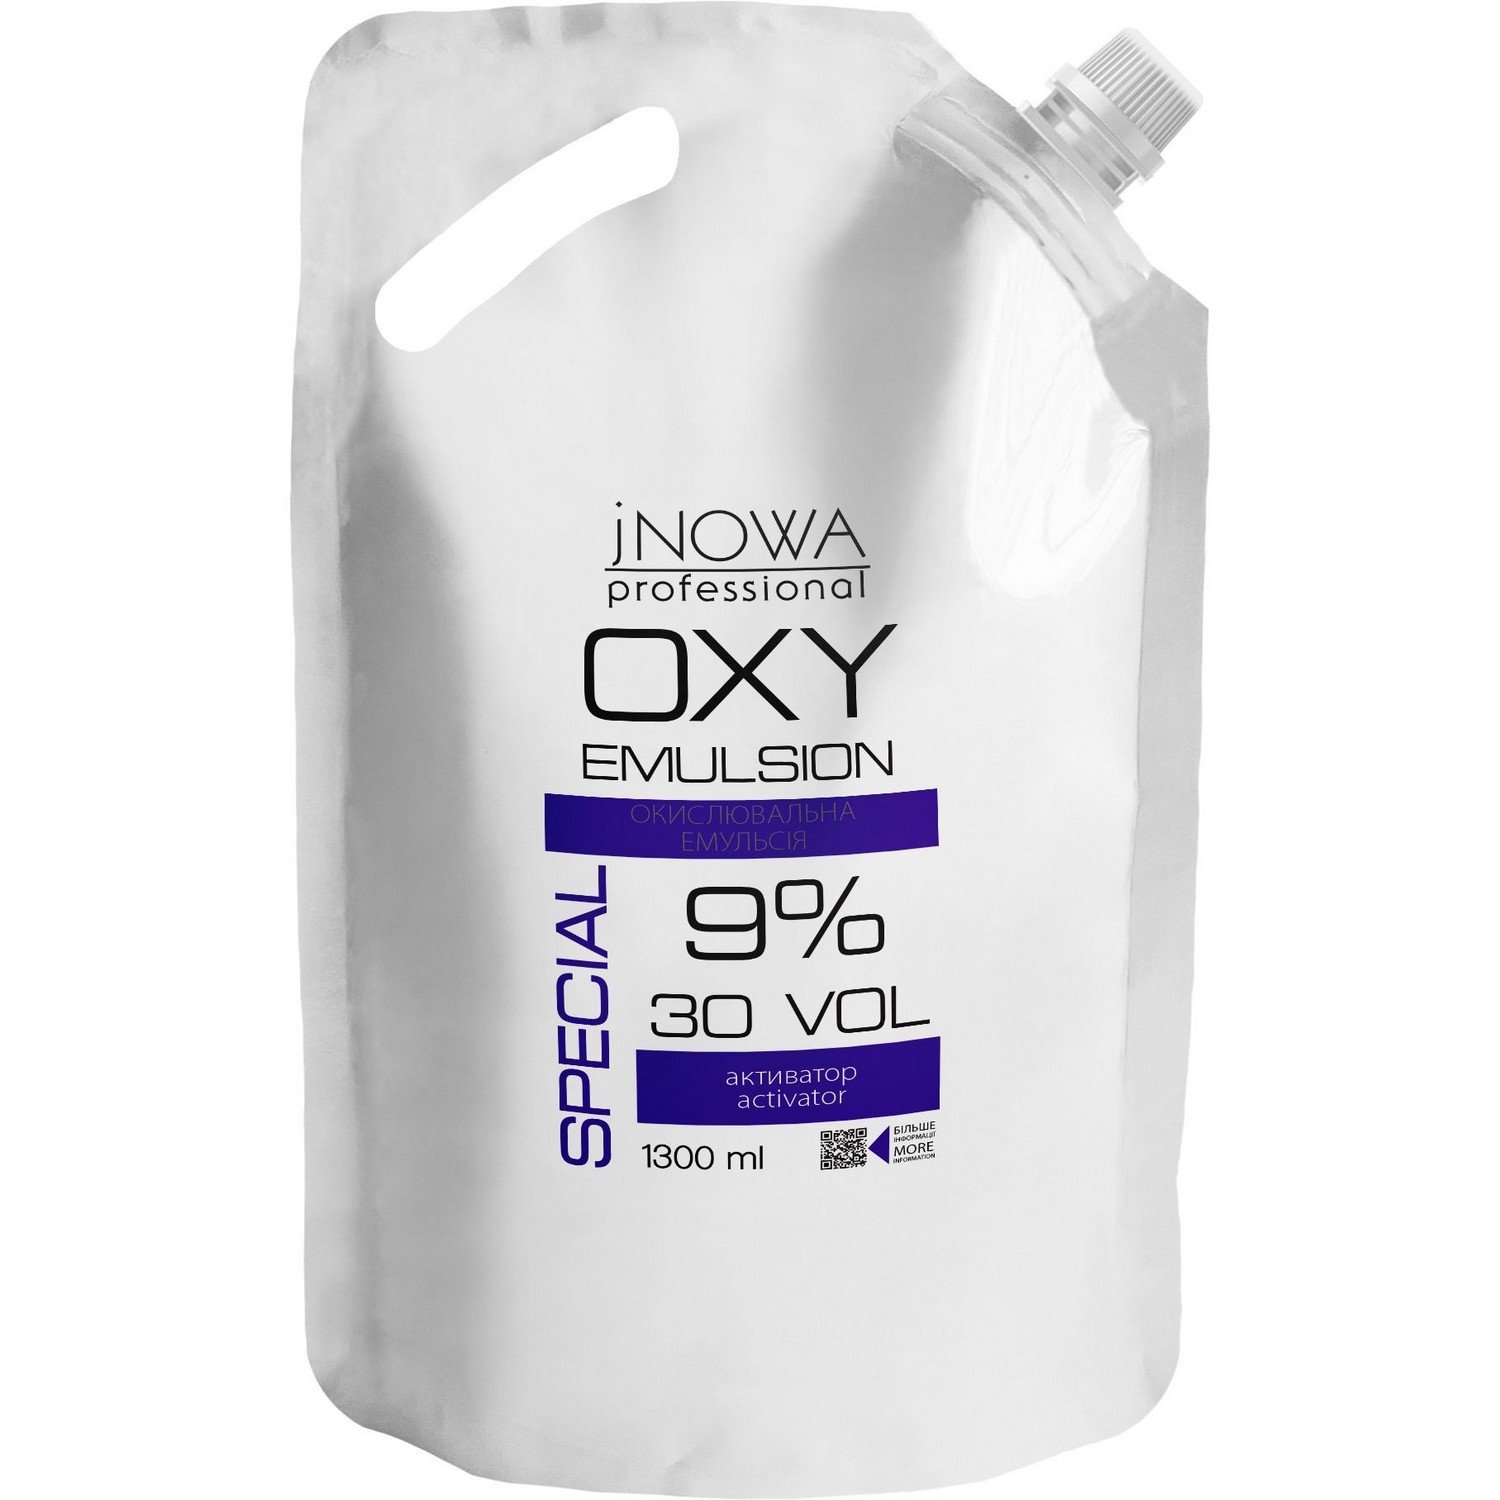 Окислительная эмульсия jNOWA Professional Special OXY 9%, 30 vol, 1300 мл - фото 1